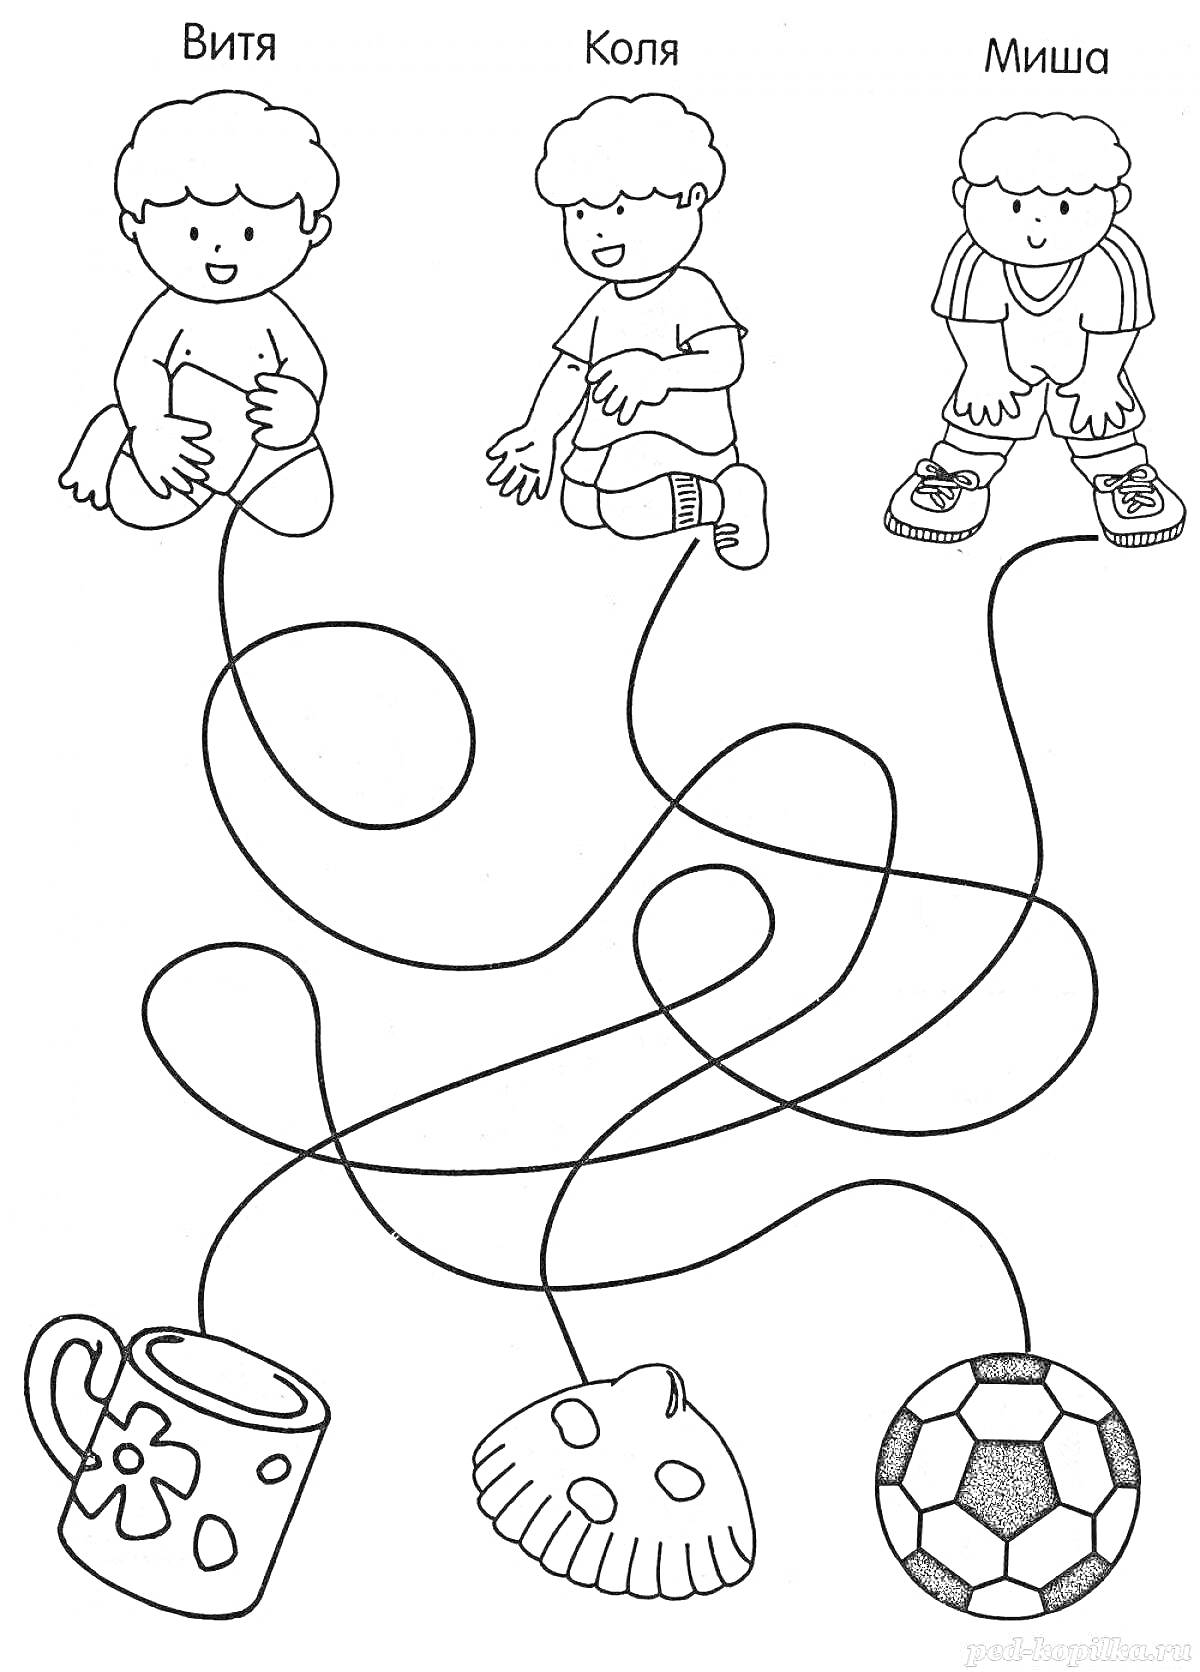 Раскраска Мальчики Витя, Коля и Миша и их предметы - кружка, ракушка, футбольный мяч